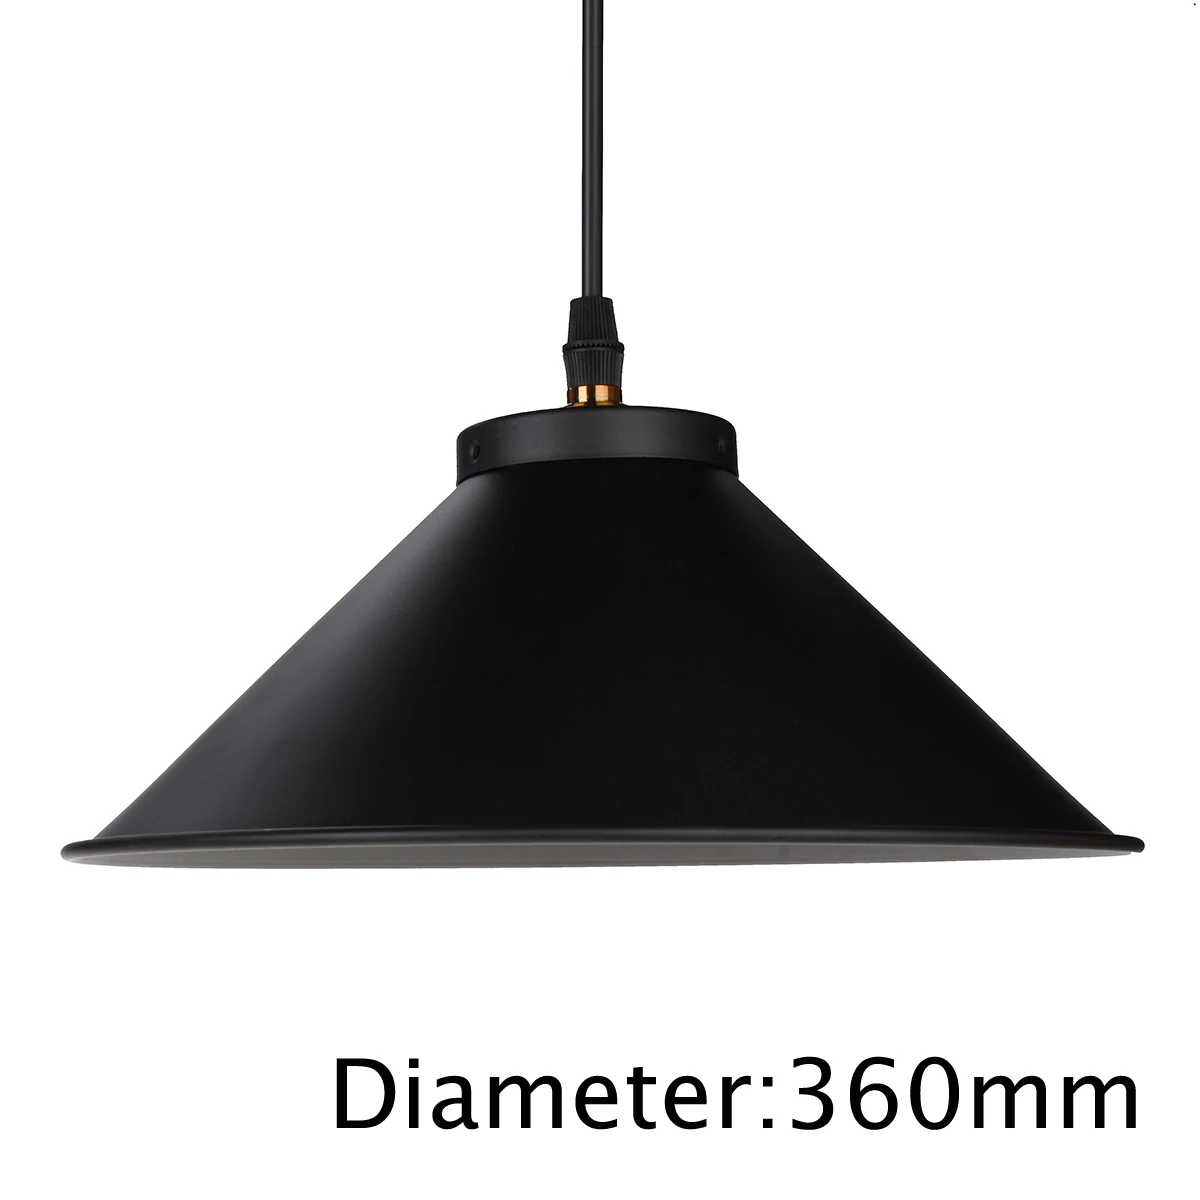 Винтажный подвесной светильник в скандинавском стиле, подвесной светильник в стиле лофт, ретро промышленный светильник, лампа Эдисона для столовой, кухни